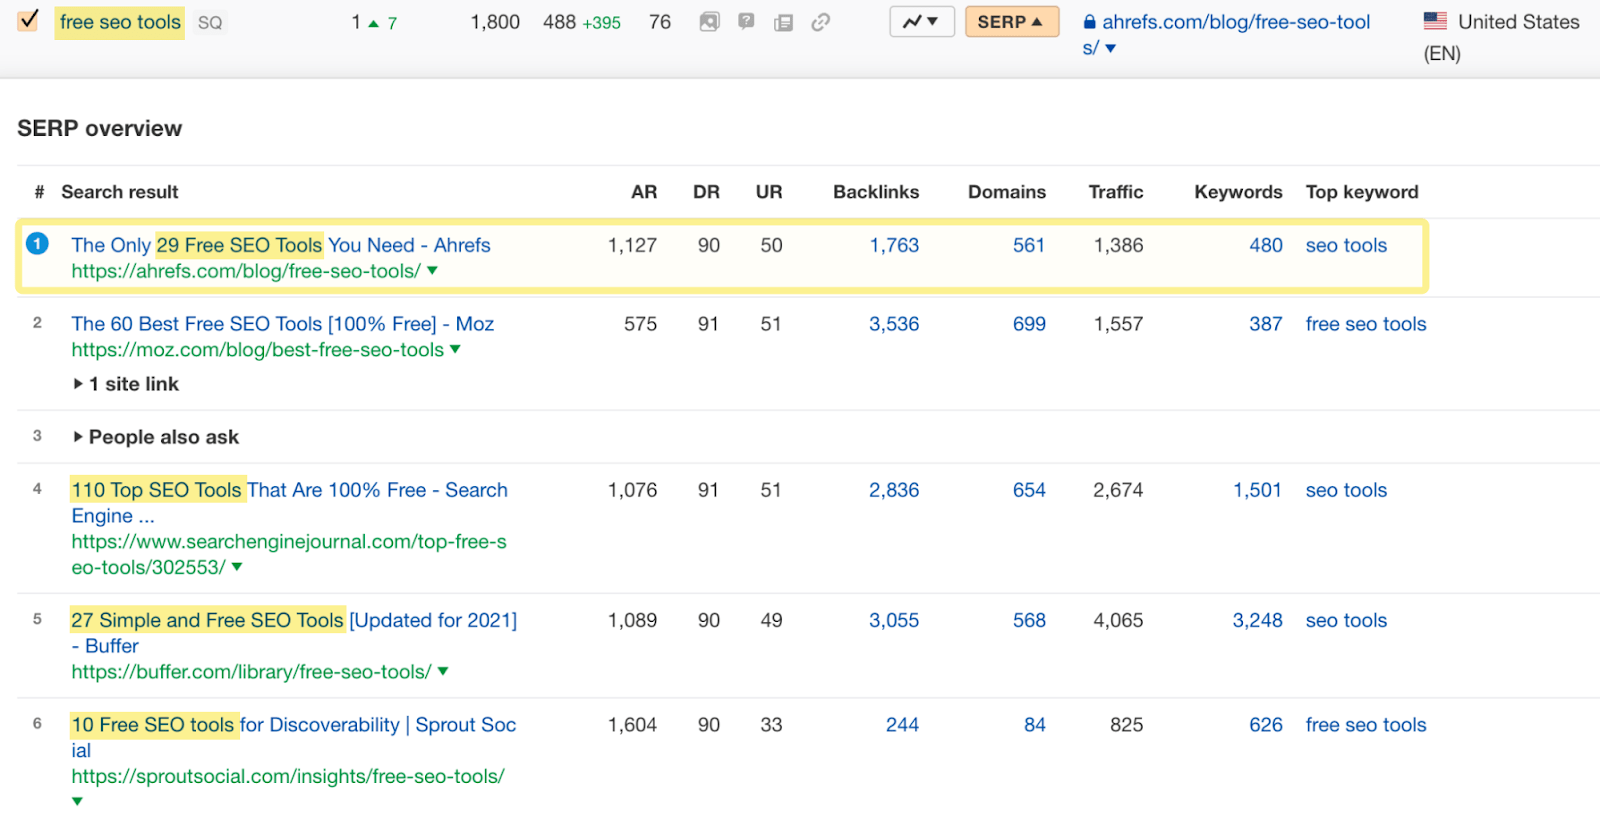 Google'ın ücretsiz SEO araçlarını listeleyen makaleleri tercih ettiğini gösteren SERP genel bakışındaki sonuçların listesi